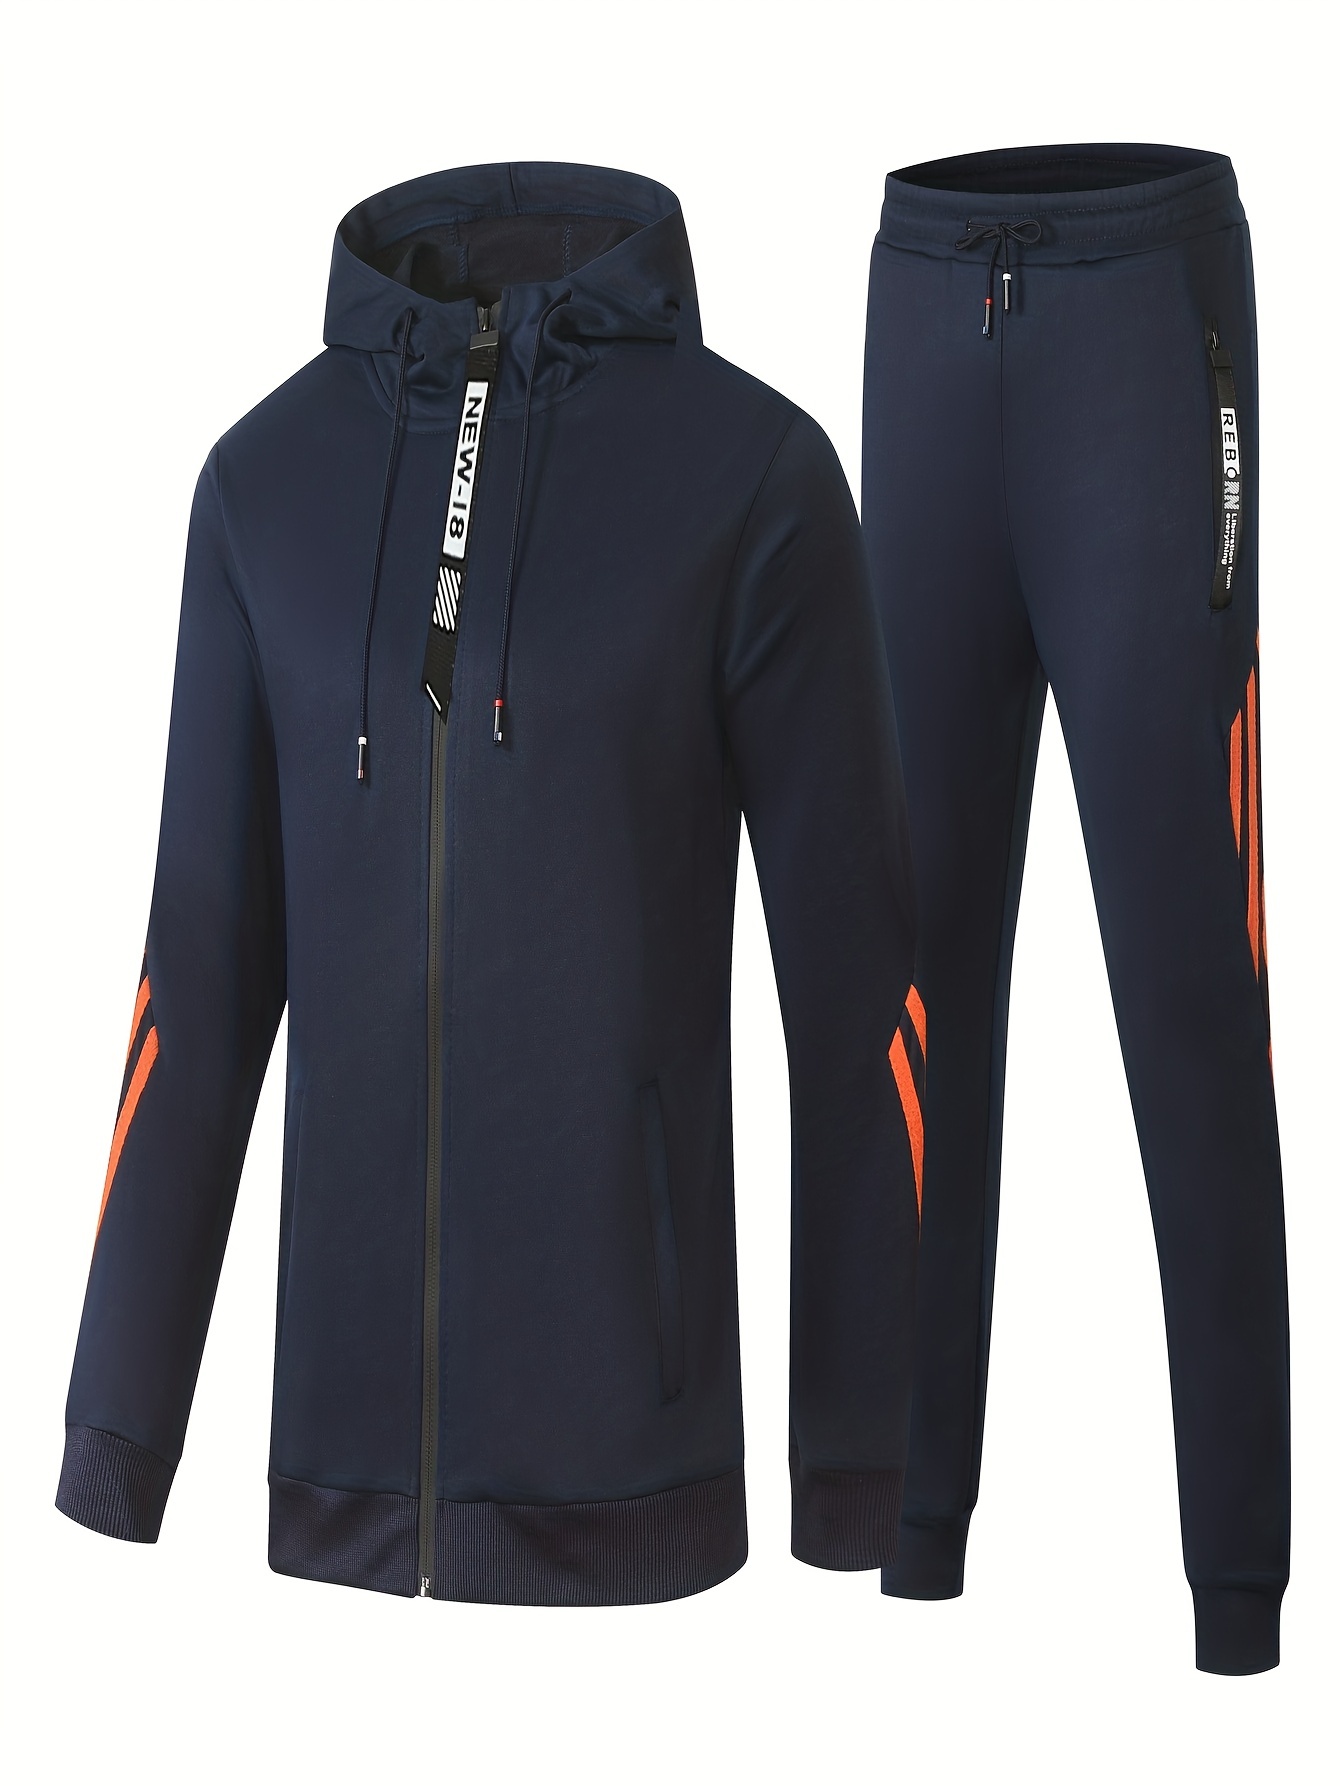 Tek Gear boys youth track suit jacket & pants 2-pc set Size: XL (18-20)  NEW